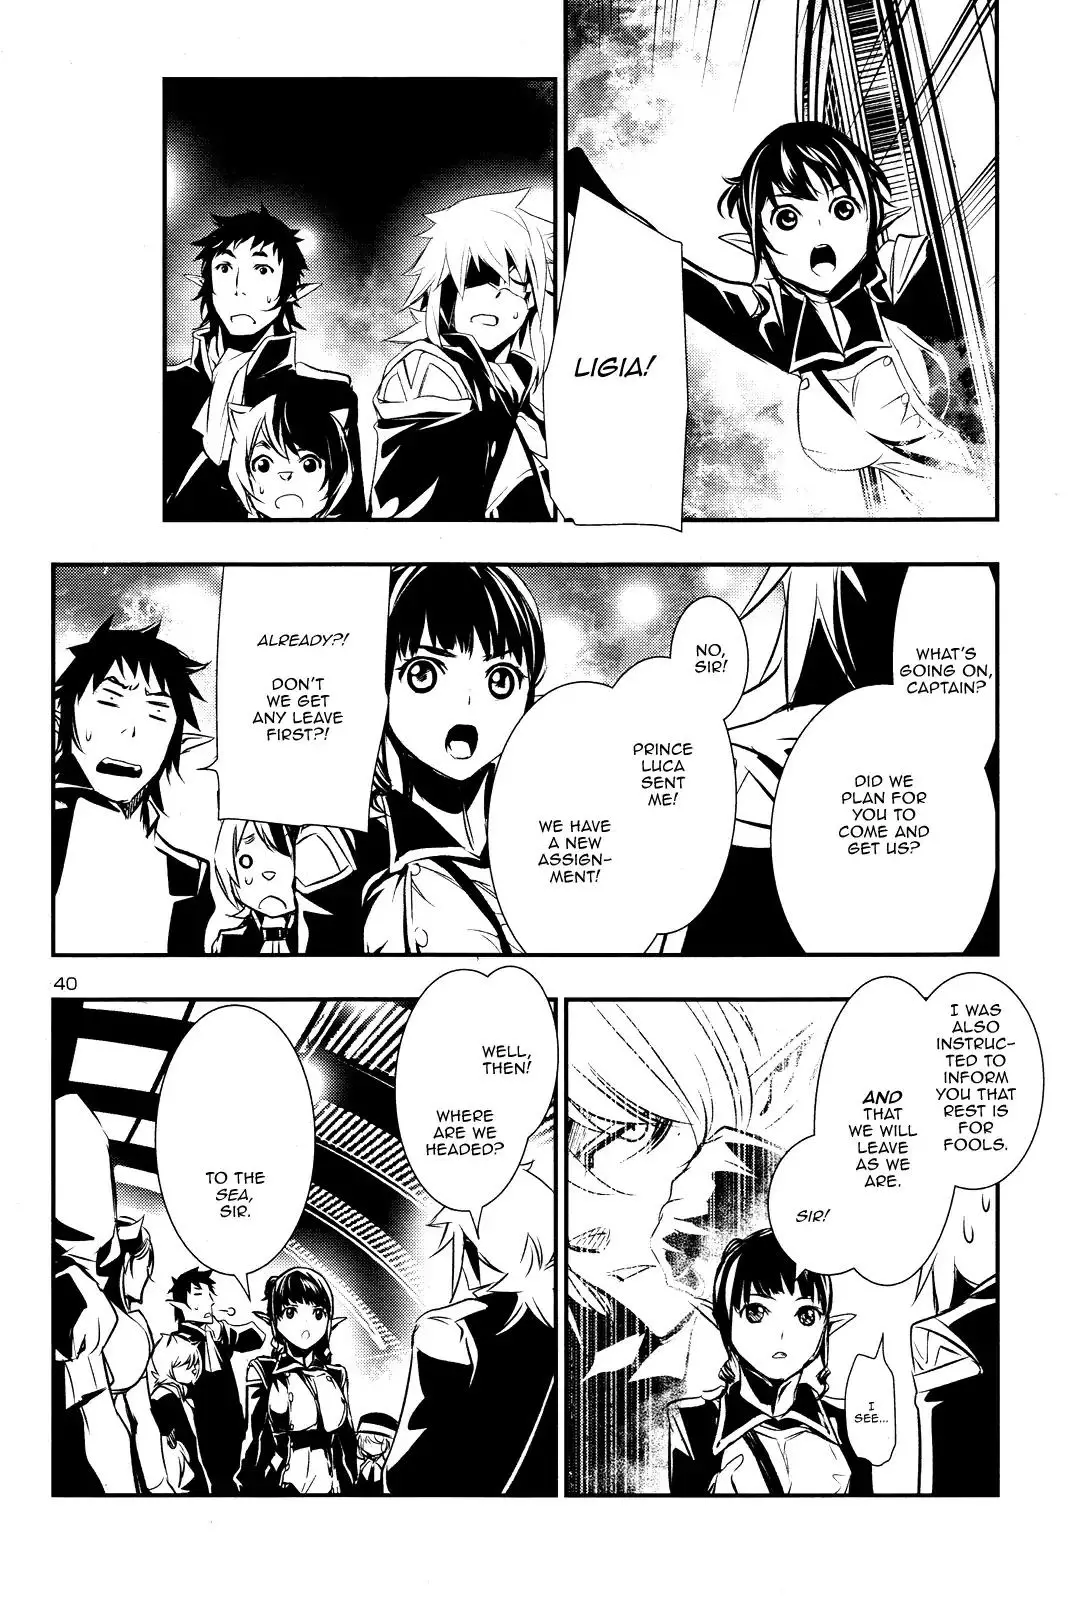 Shinju no Nectar - 13 page 38